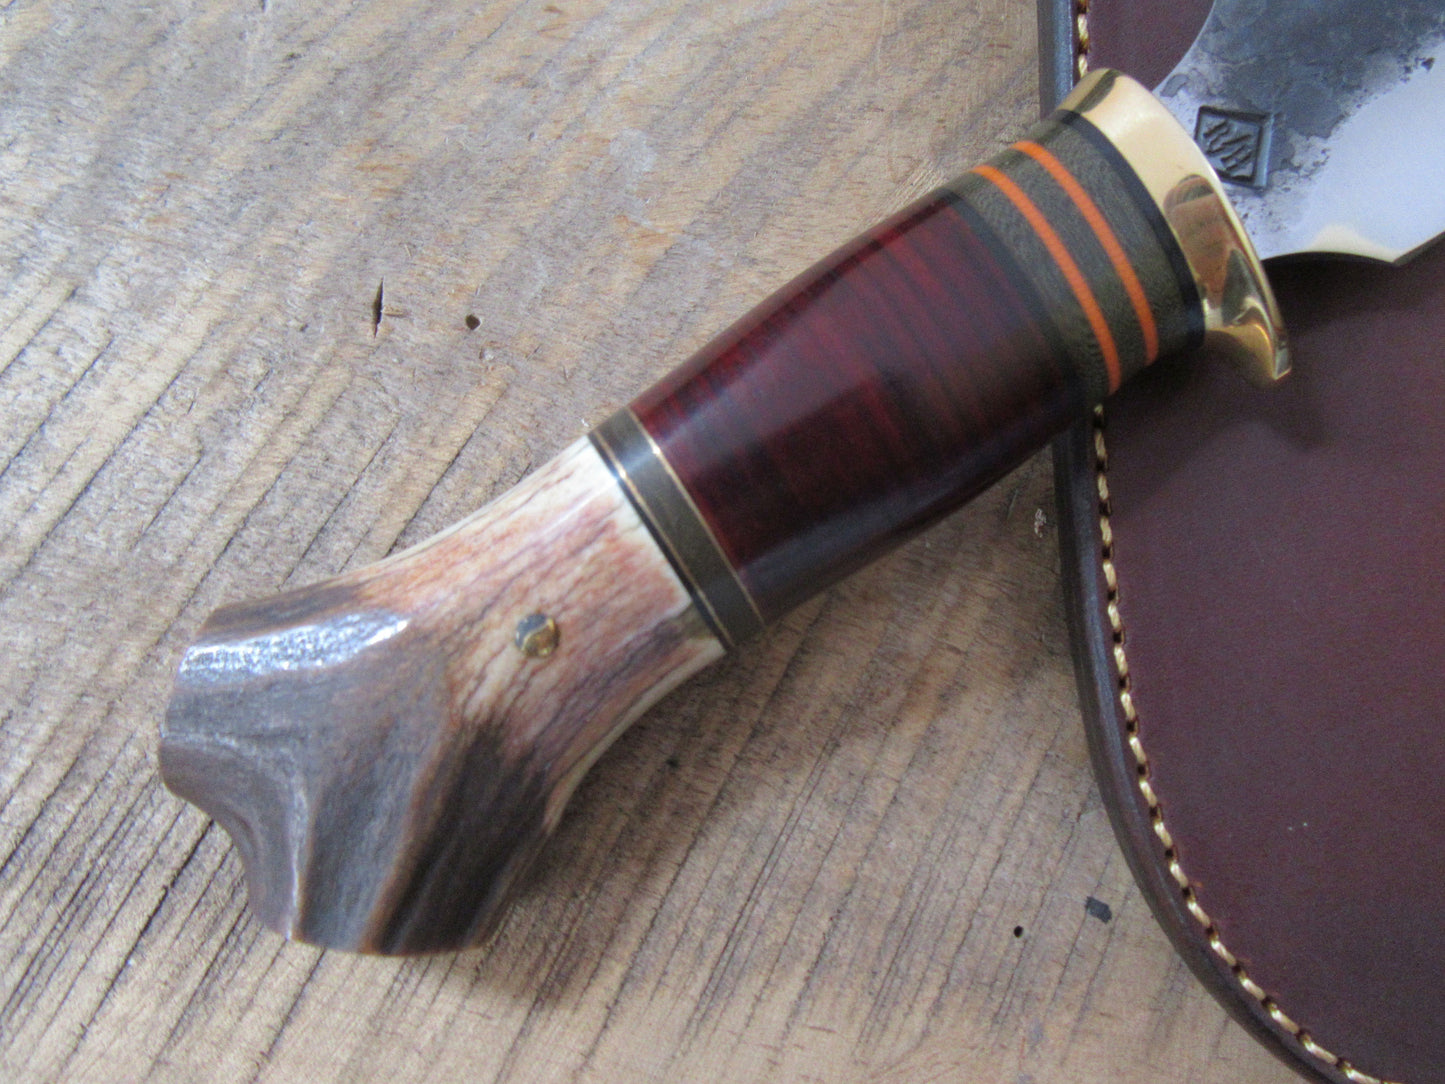 Scagel Style Hammer Mark Alaskan Skinner